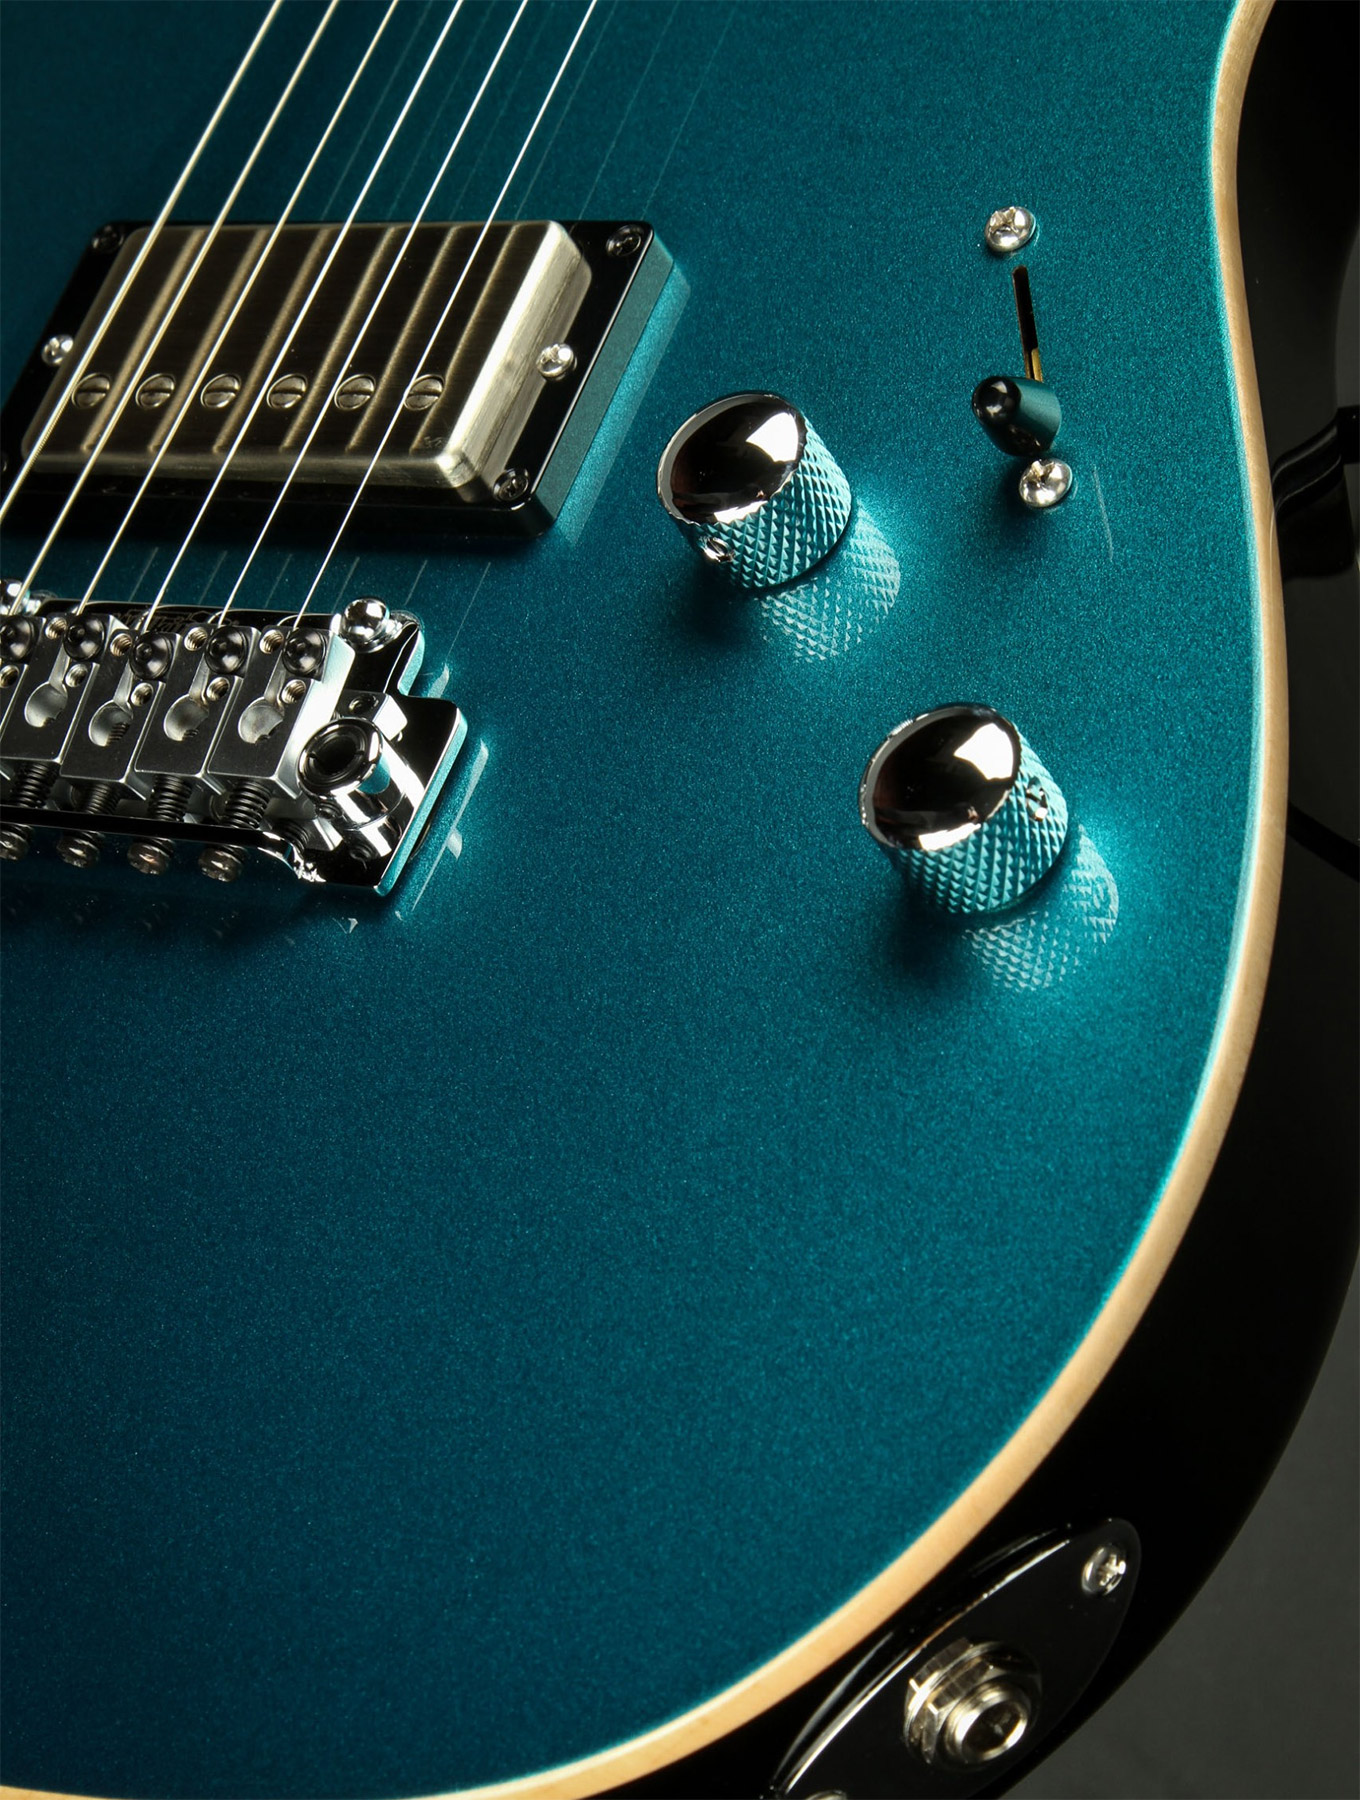 Suhr Pete Thorn Standard 01-sig-0012 Signature 2h Trem Rw - Ocean Turquoise Metallic - Elektrische gitaar in Str-vorm - Variation 6